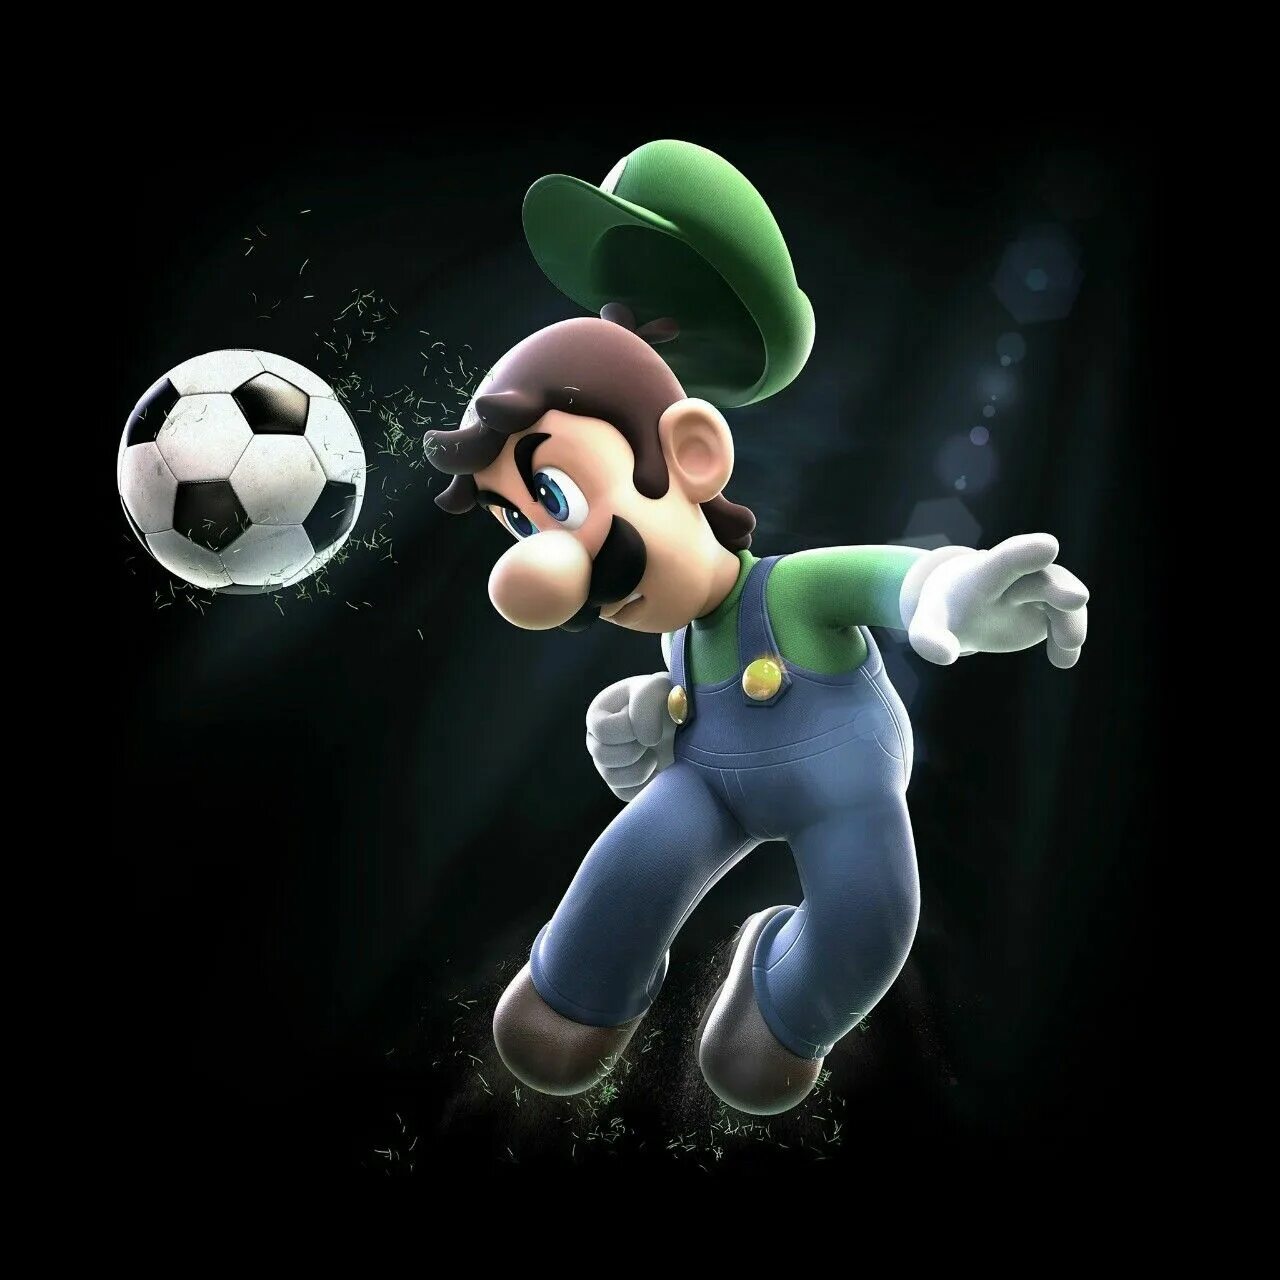 Луиджи (персонаж) персонажи игр Mario. Супер Марио БРОС Луиджи. Марио персонажи Луиджи. Супер Марио и Луиджи игра.